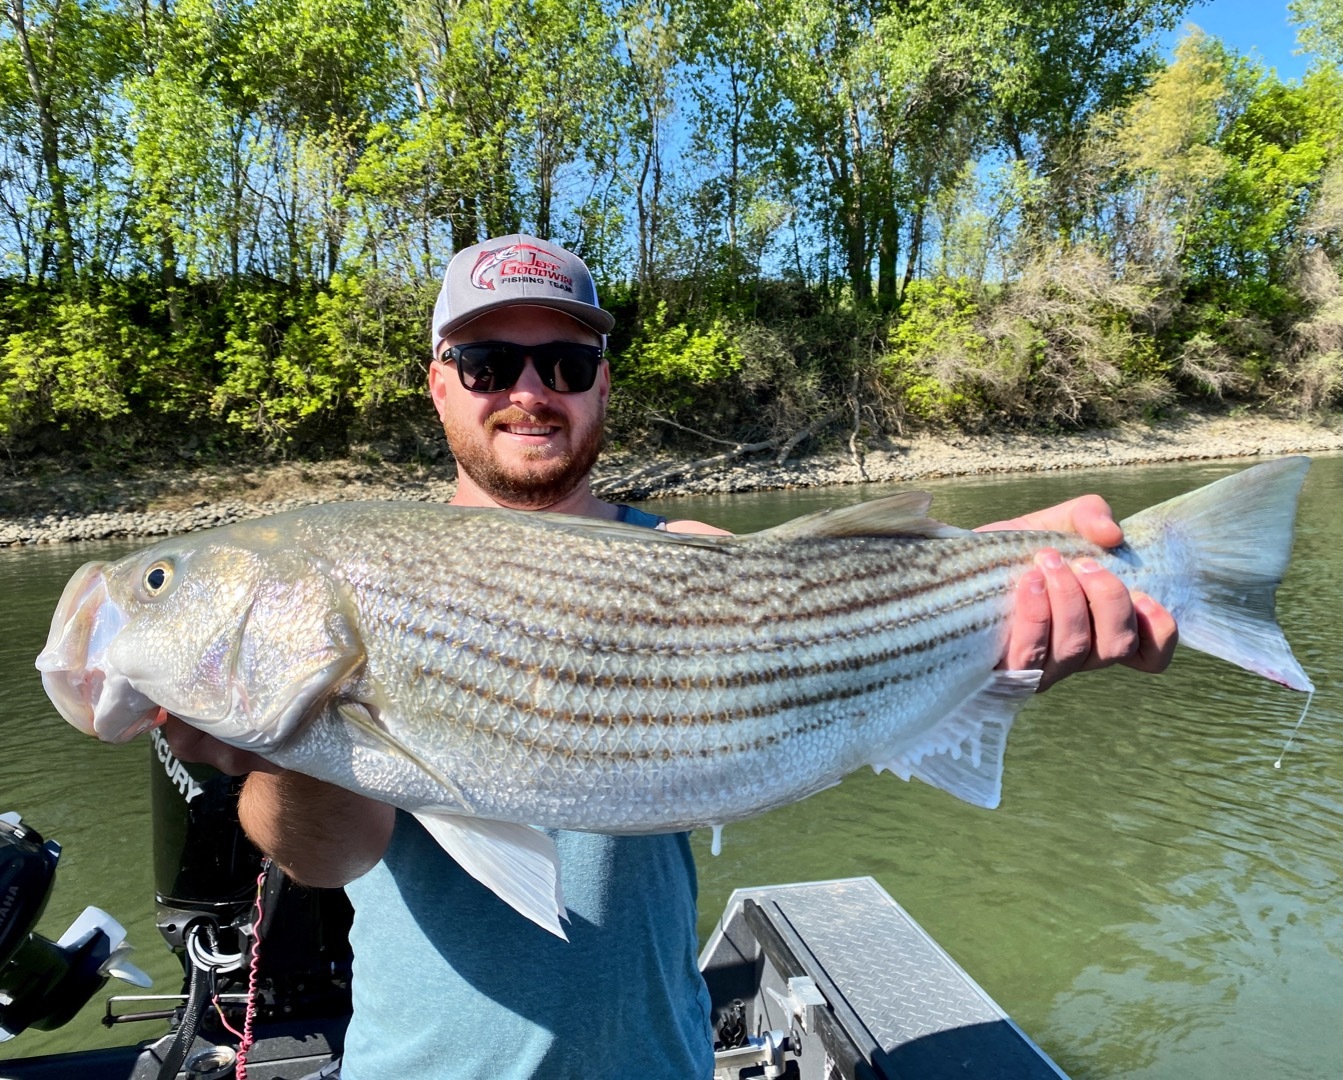 Angler hooks giant striper on Sac River